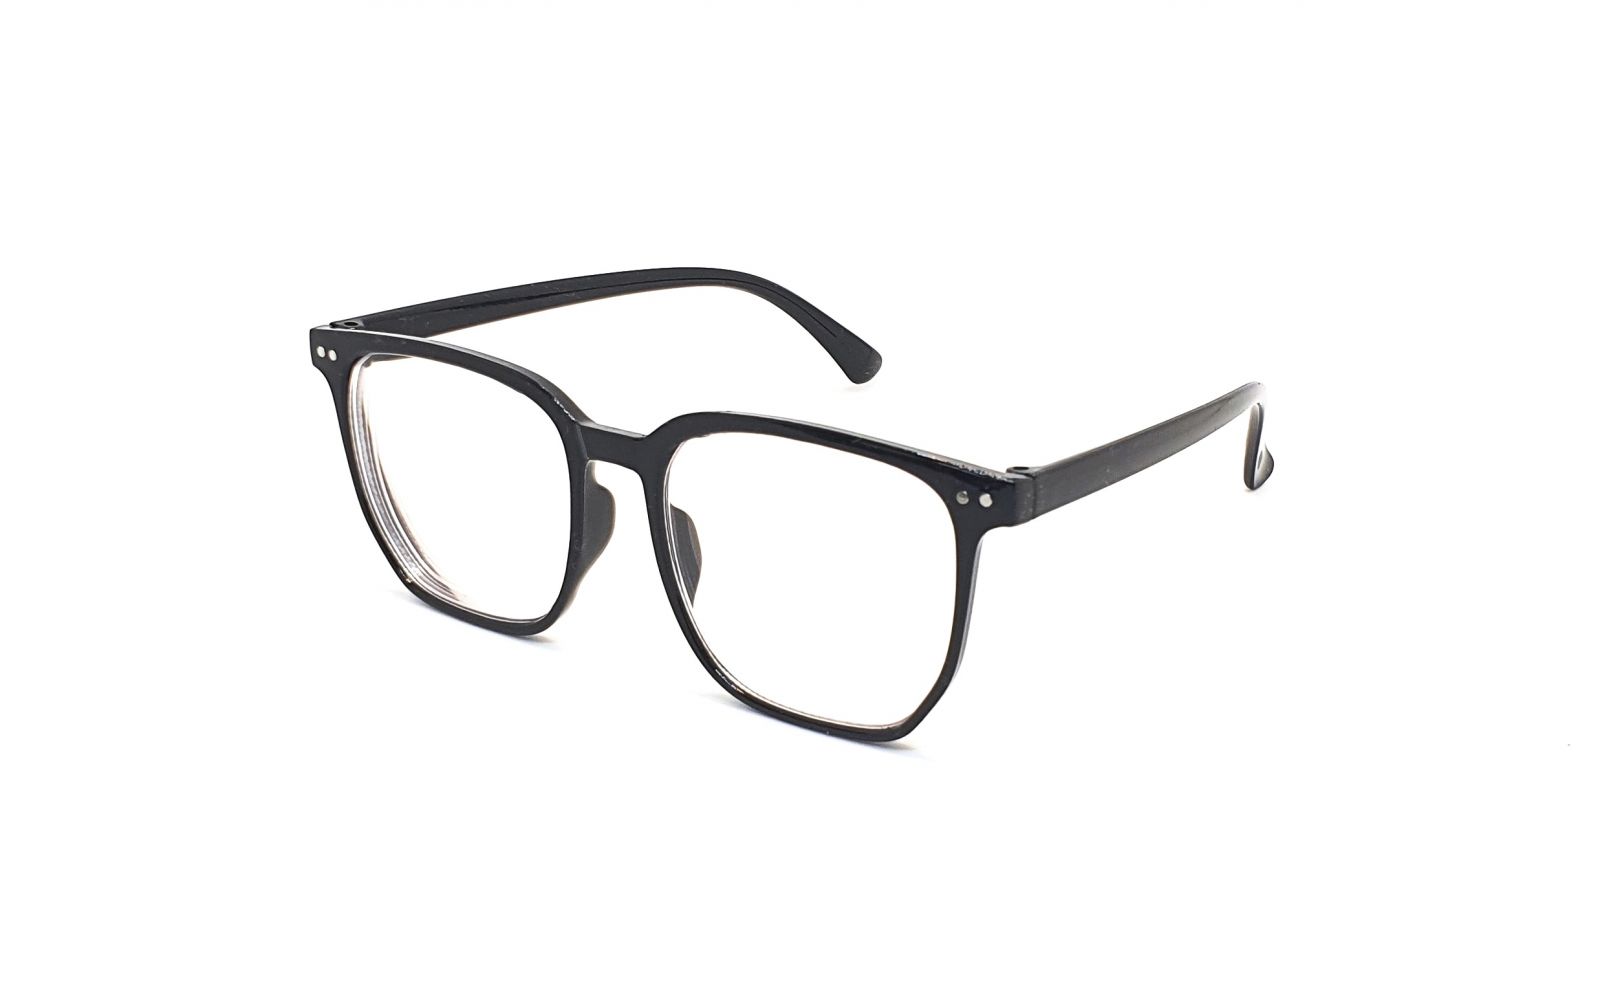 Samozabarvovací dioptrické brýle F24 / -6,00 black